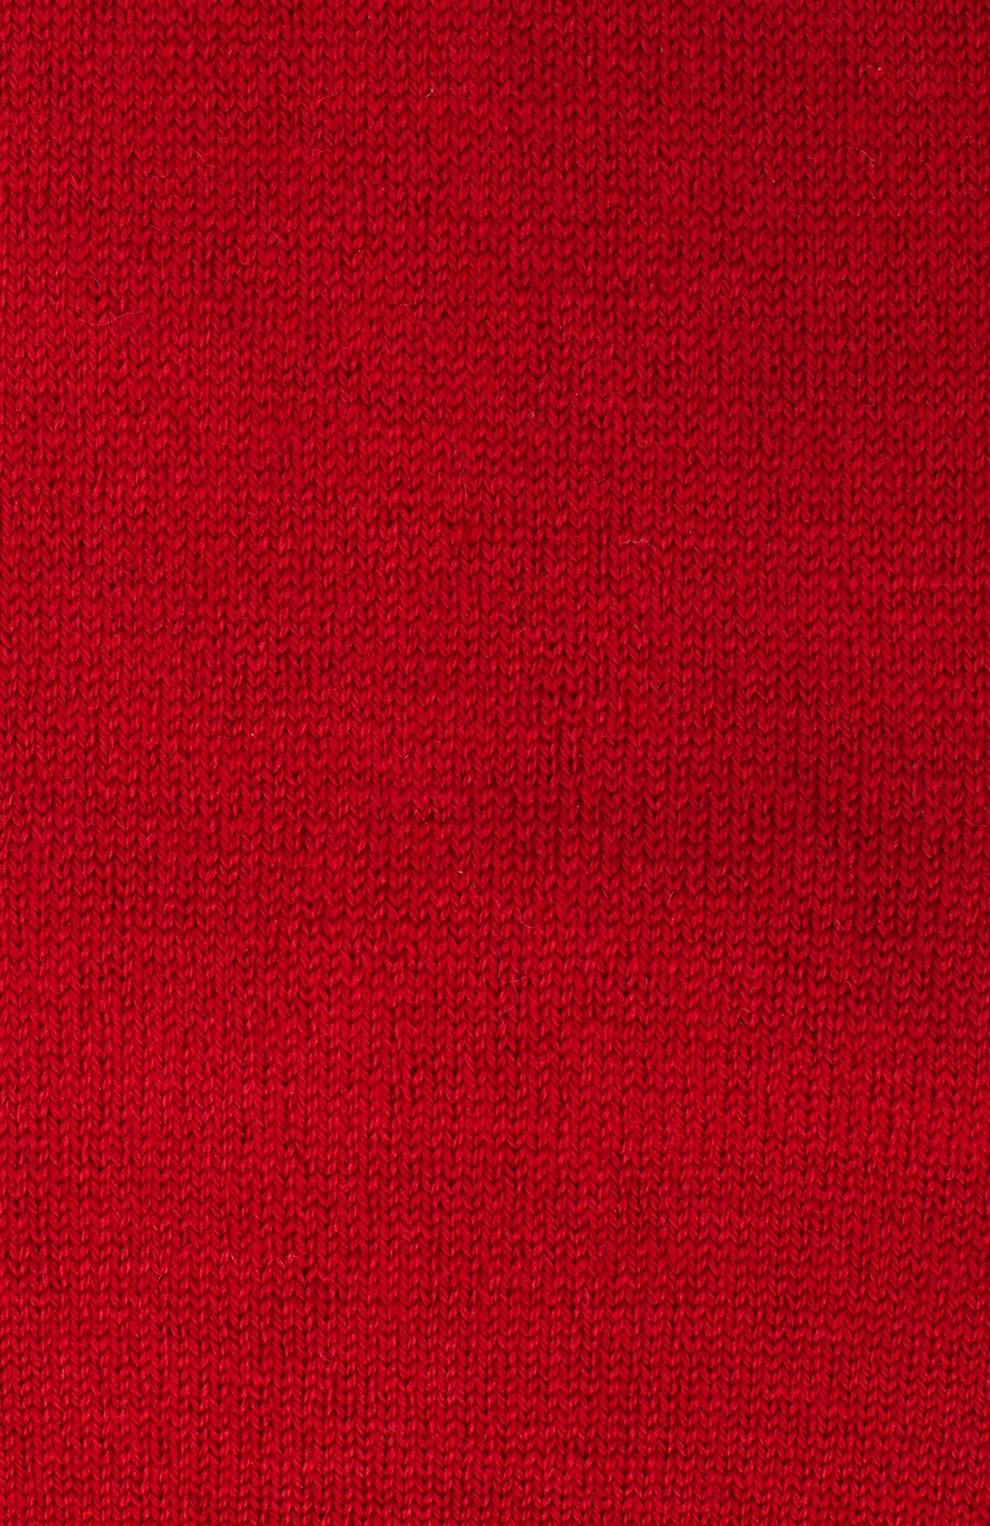 Детские шерстяные колготки FALKE бордового цвета, арт. 13488. | Фото 2 (Материал: Текстиль, Шерсть; Региональные ограничения белый список (Axapta Mercury): RU)